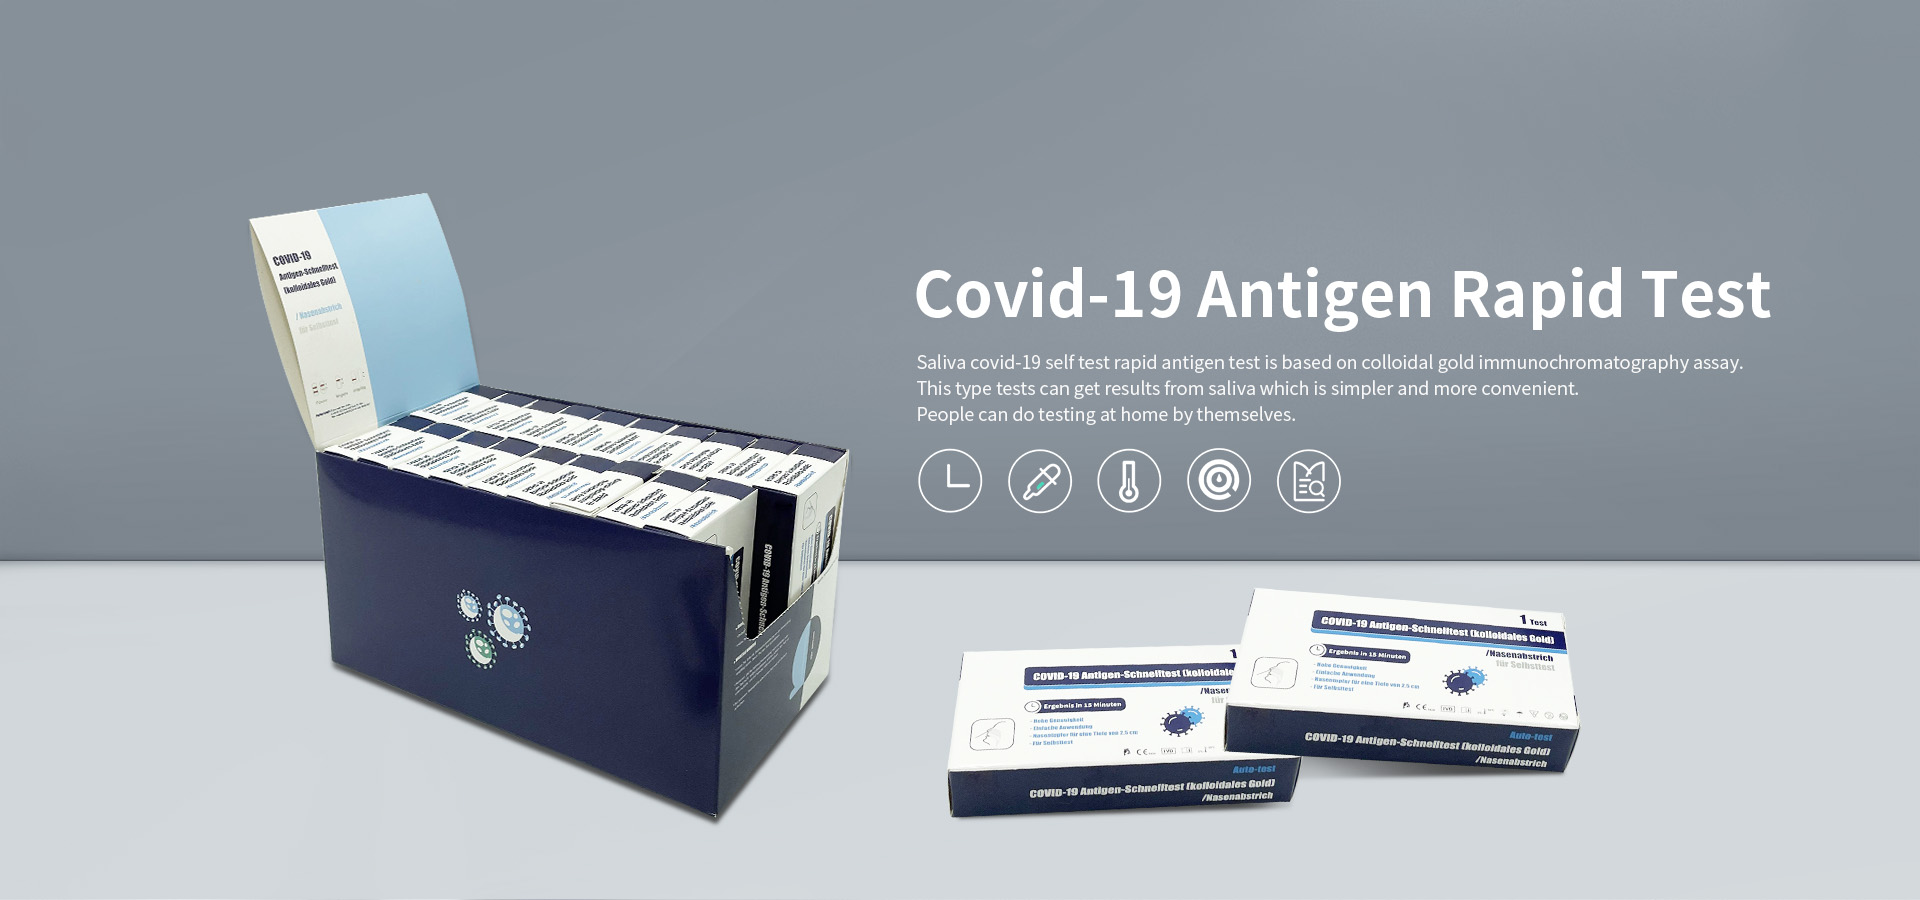 Výrobci rychlého testu antigenu v Číně pro samotestování Covid-19